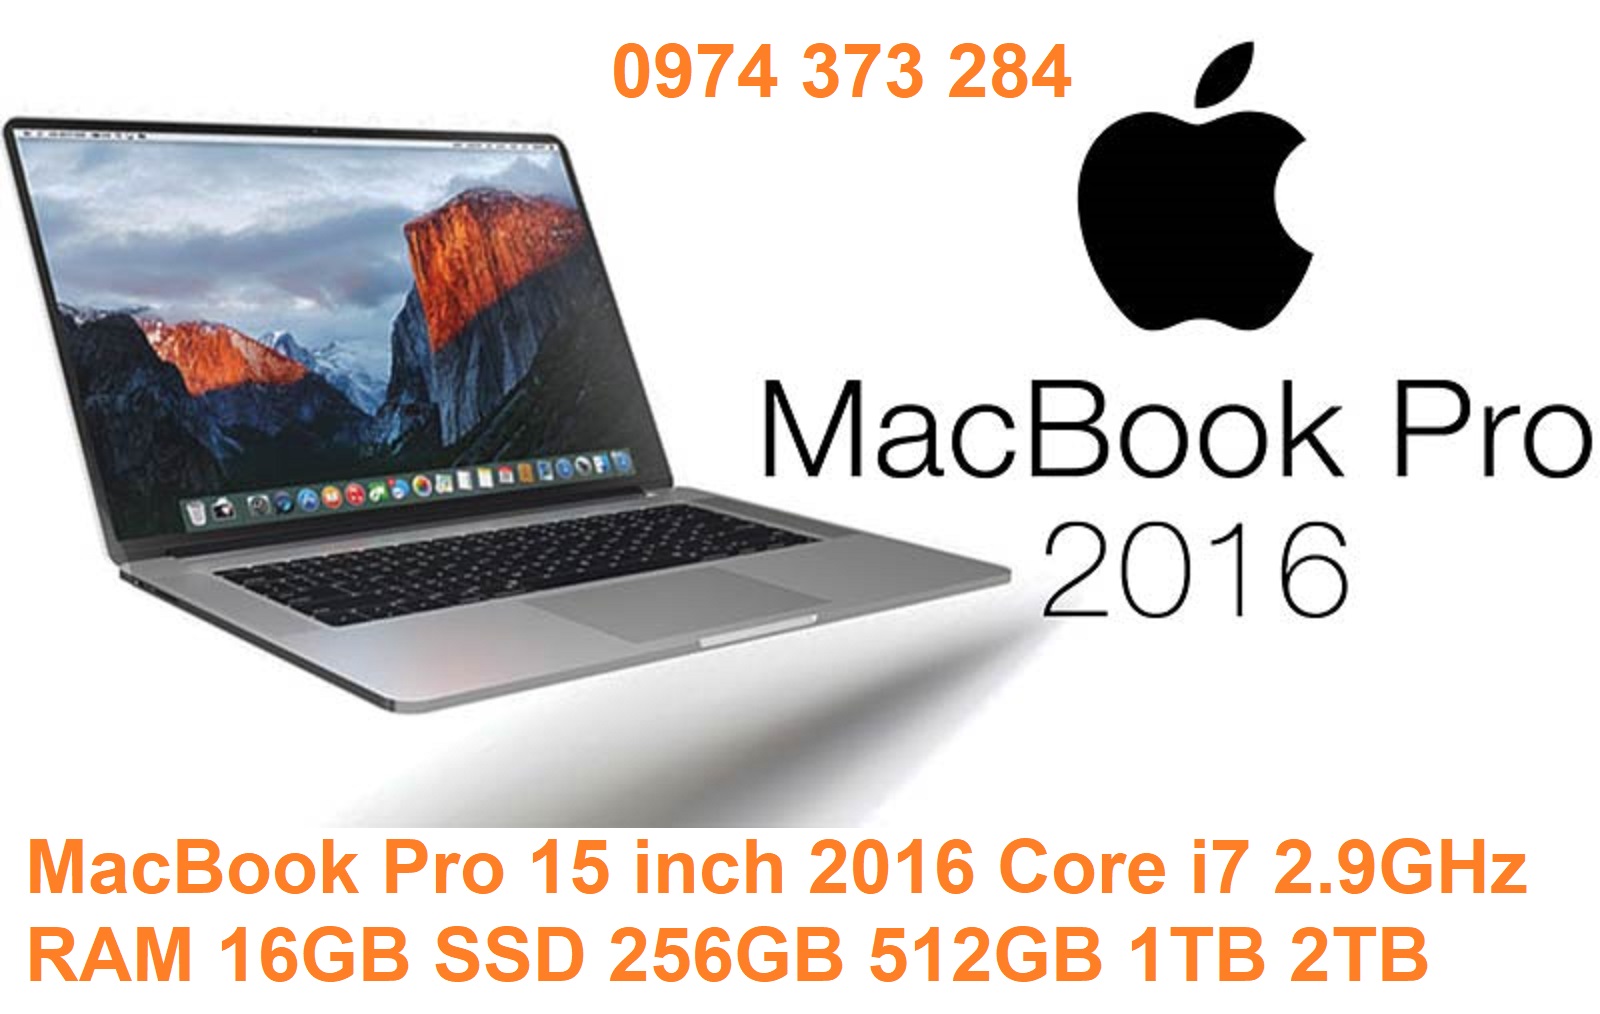 MacBook Pro 15 inch 2016 Core i7 2.9GHz RAM 16GB SSD 256GB 512GB 1TB 2TB